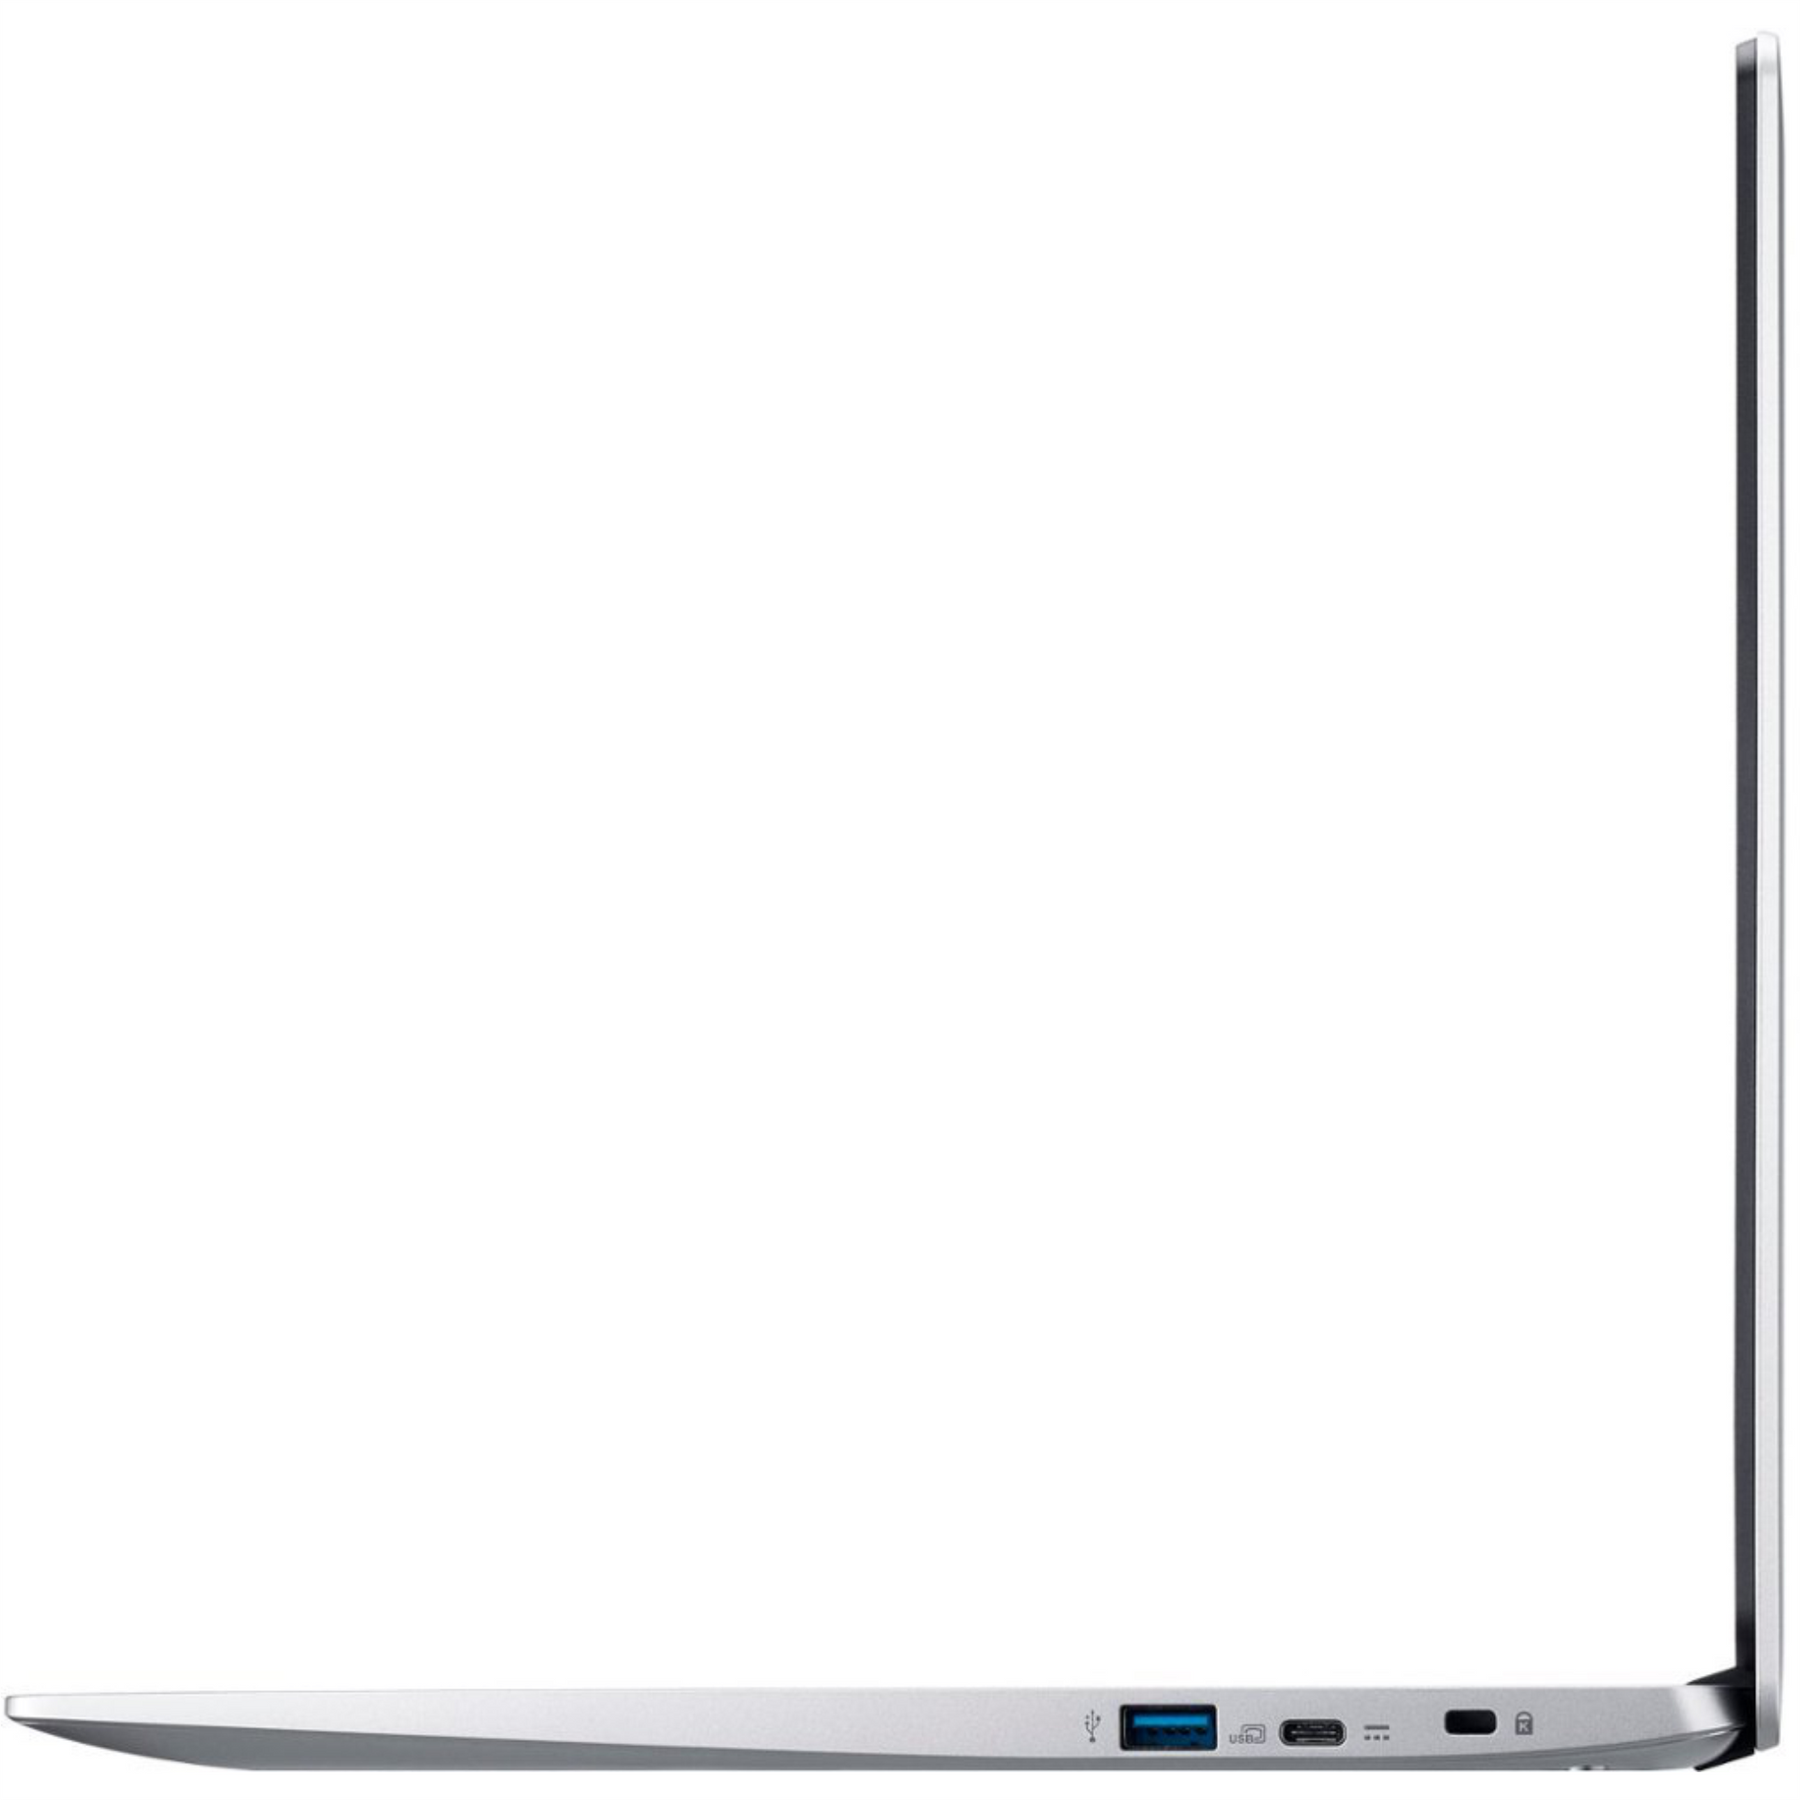 Acer Chromebook Intel Celeron 4Gb 512Gb Sd 15.6" Chrome OS Ref +A